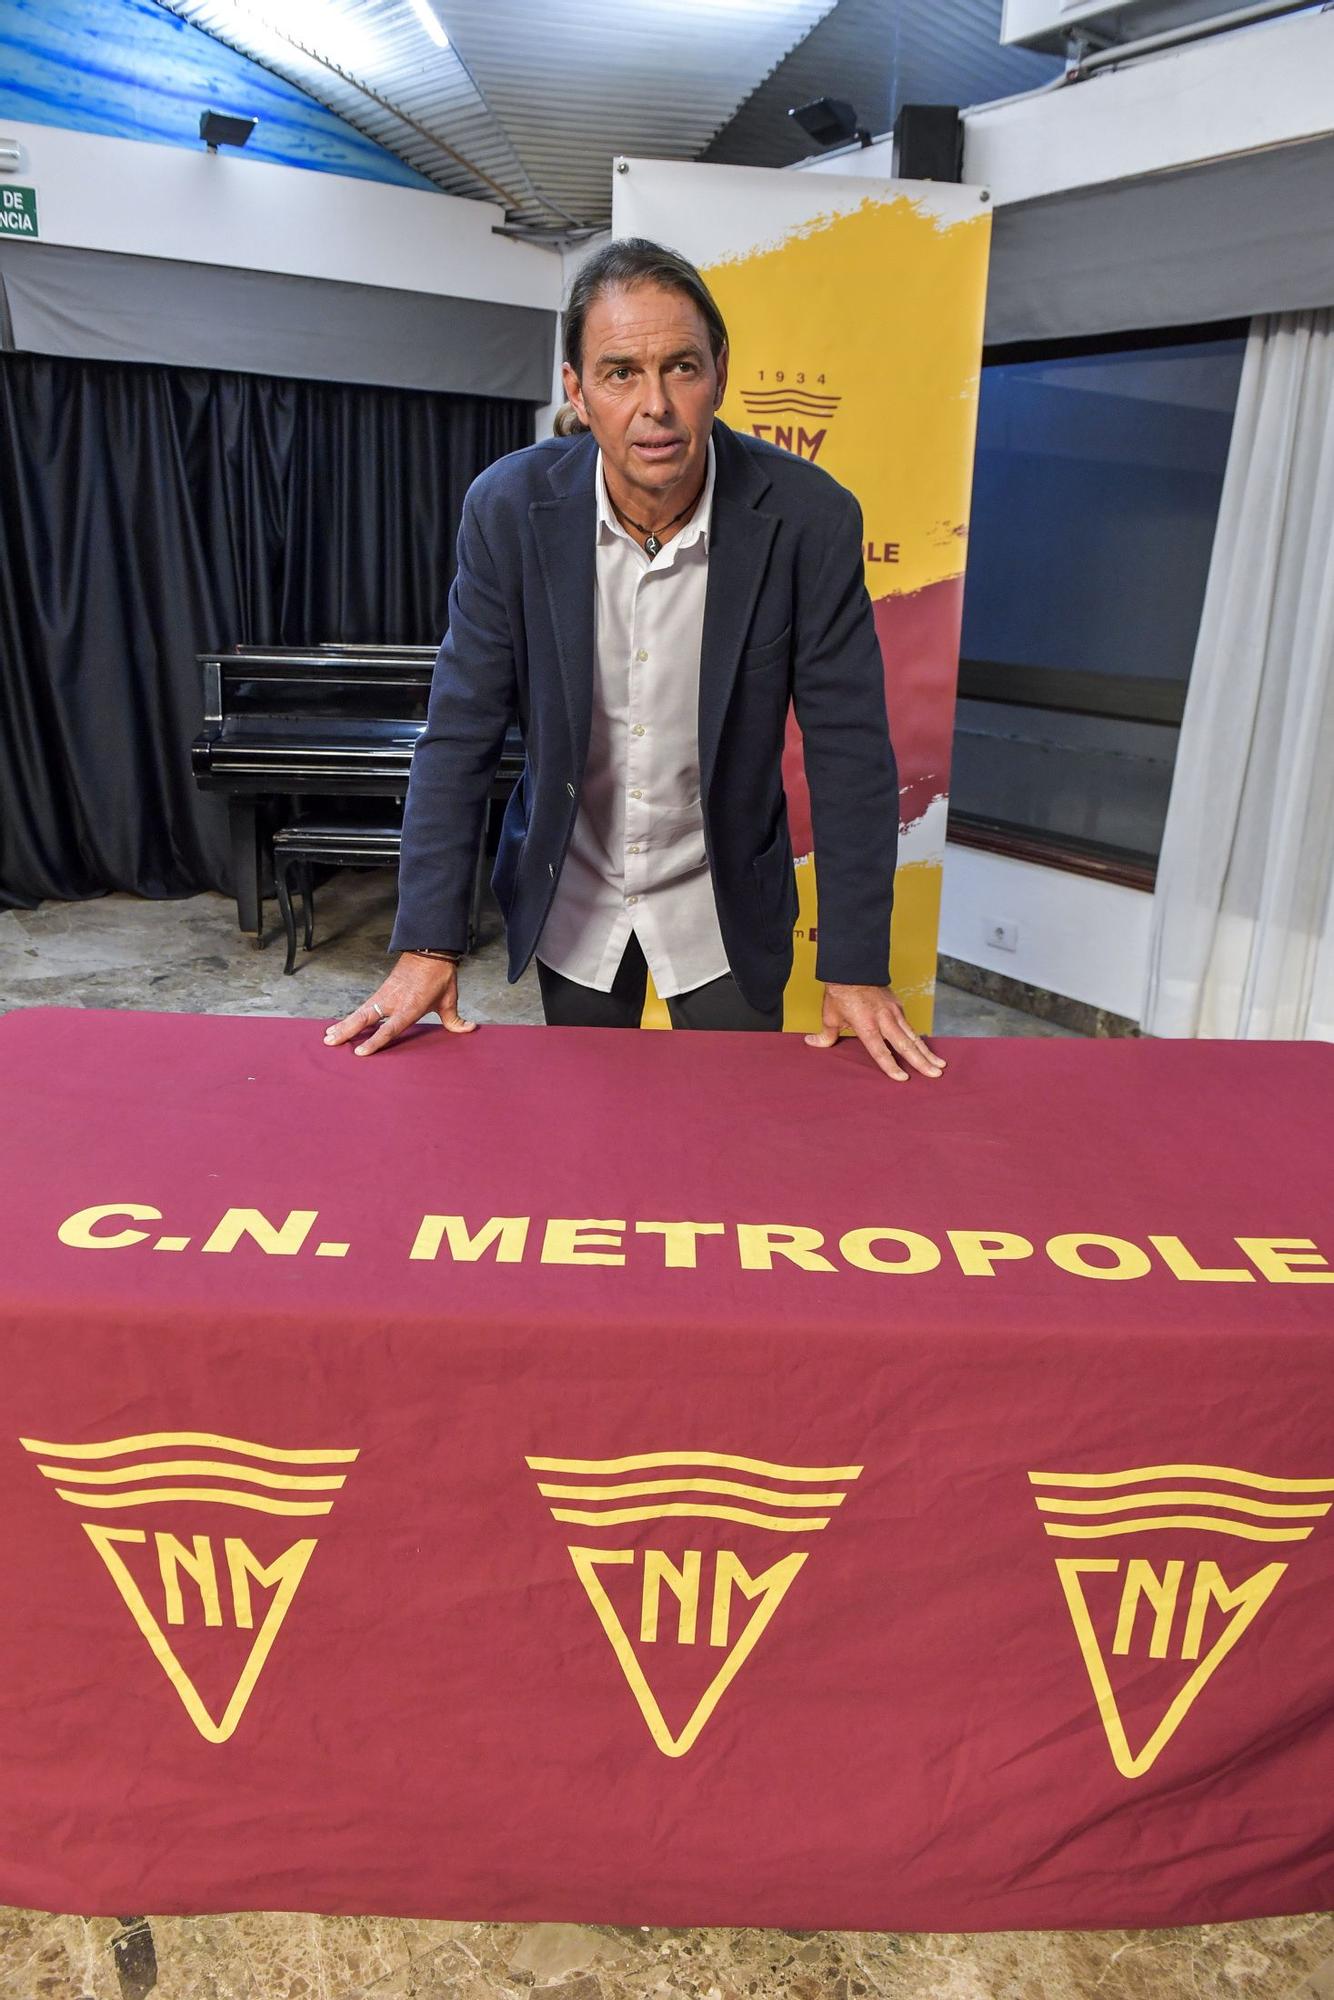 El CN Metropole presenta en rueda de prensa a su nueva directiva